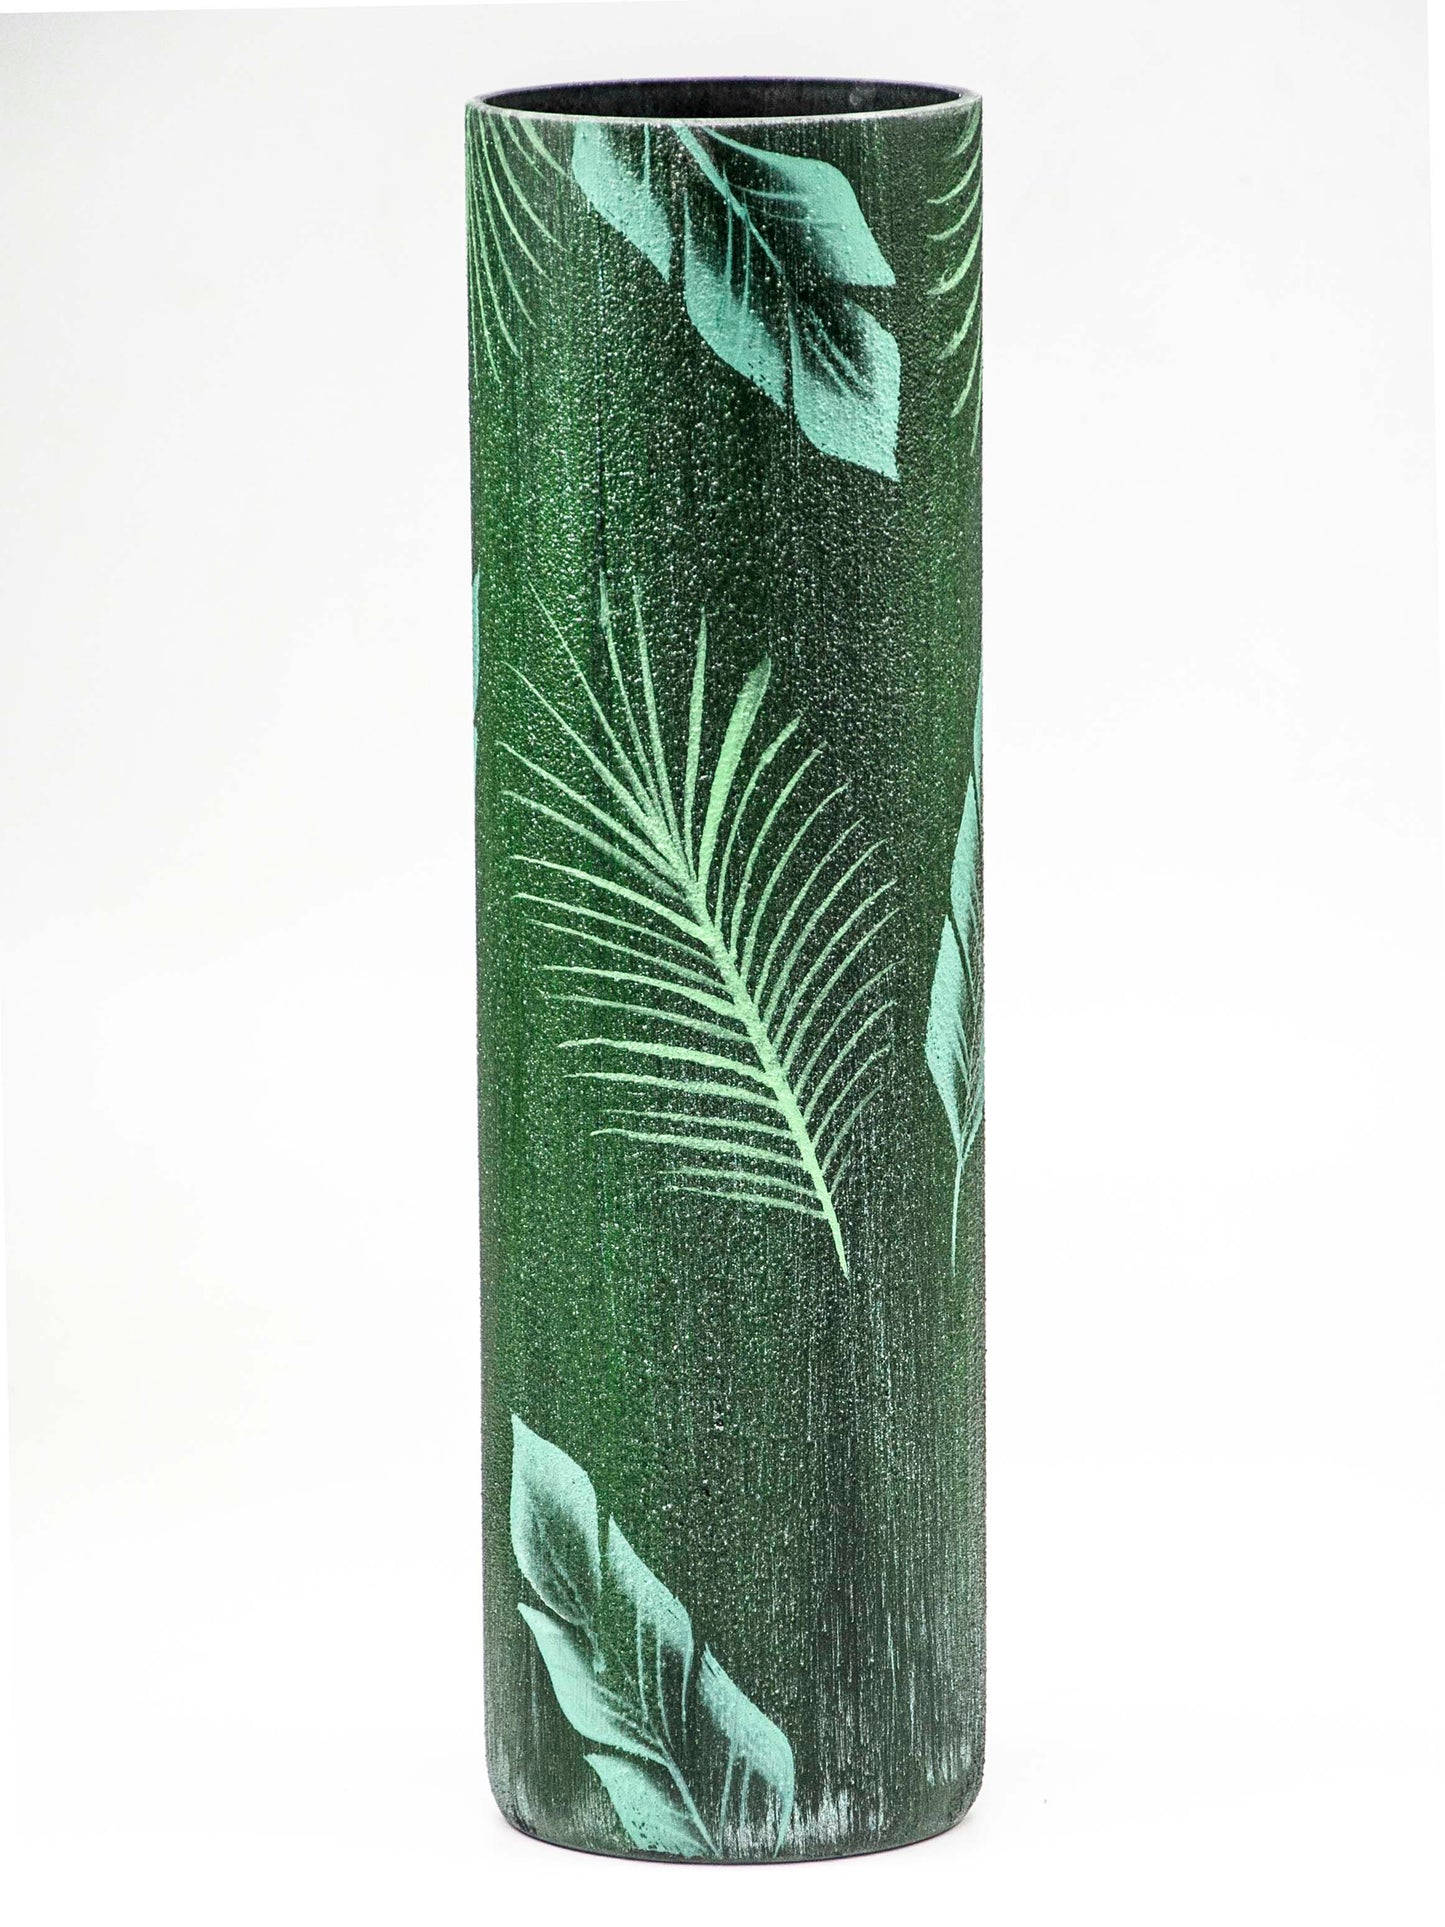 Glass vase for flowers | Cylinder Vase | Interior Design | Home Decor | Large Floor Vase 16 inch | Tropical leaves decorated vase